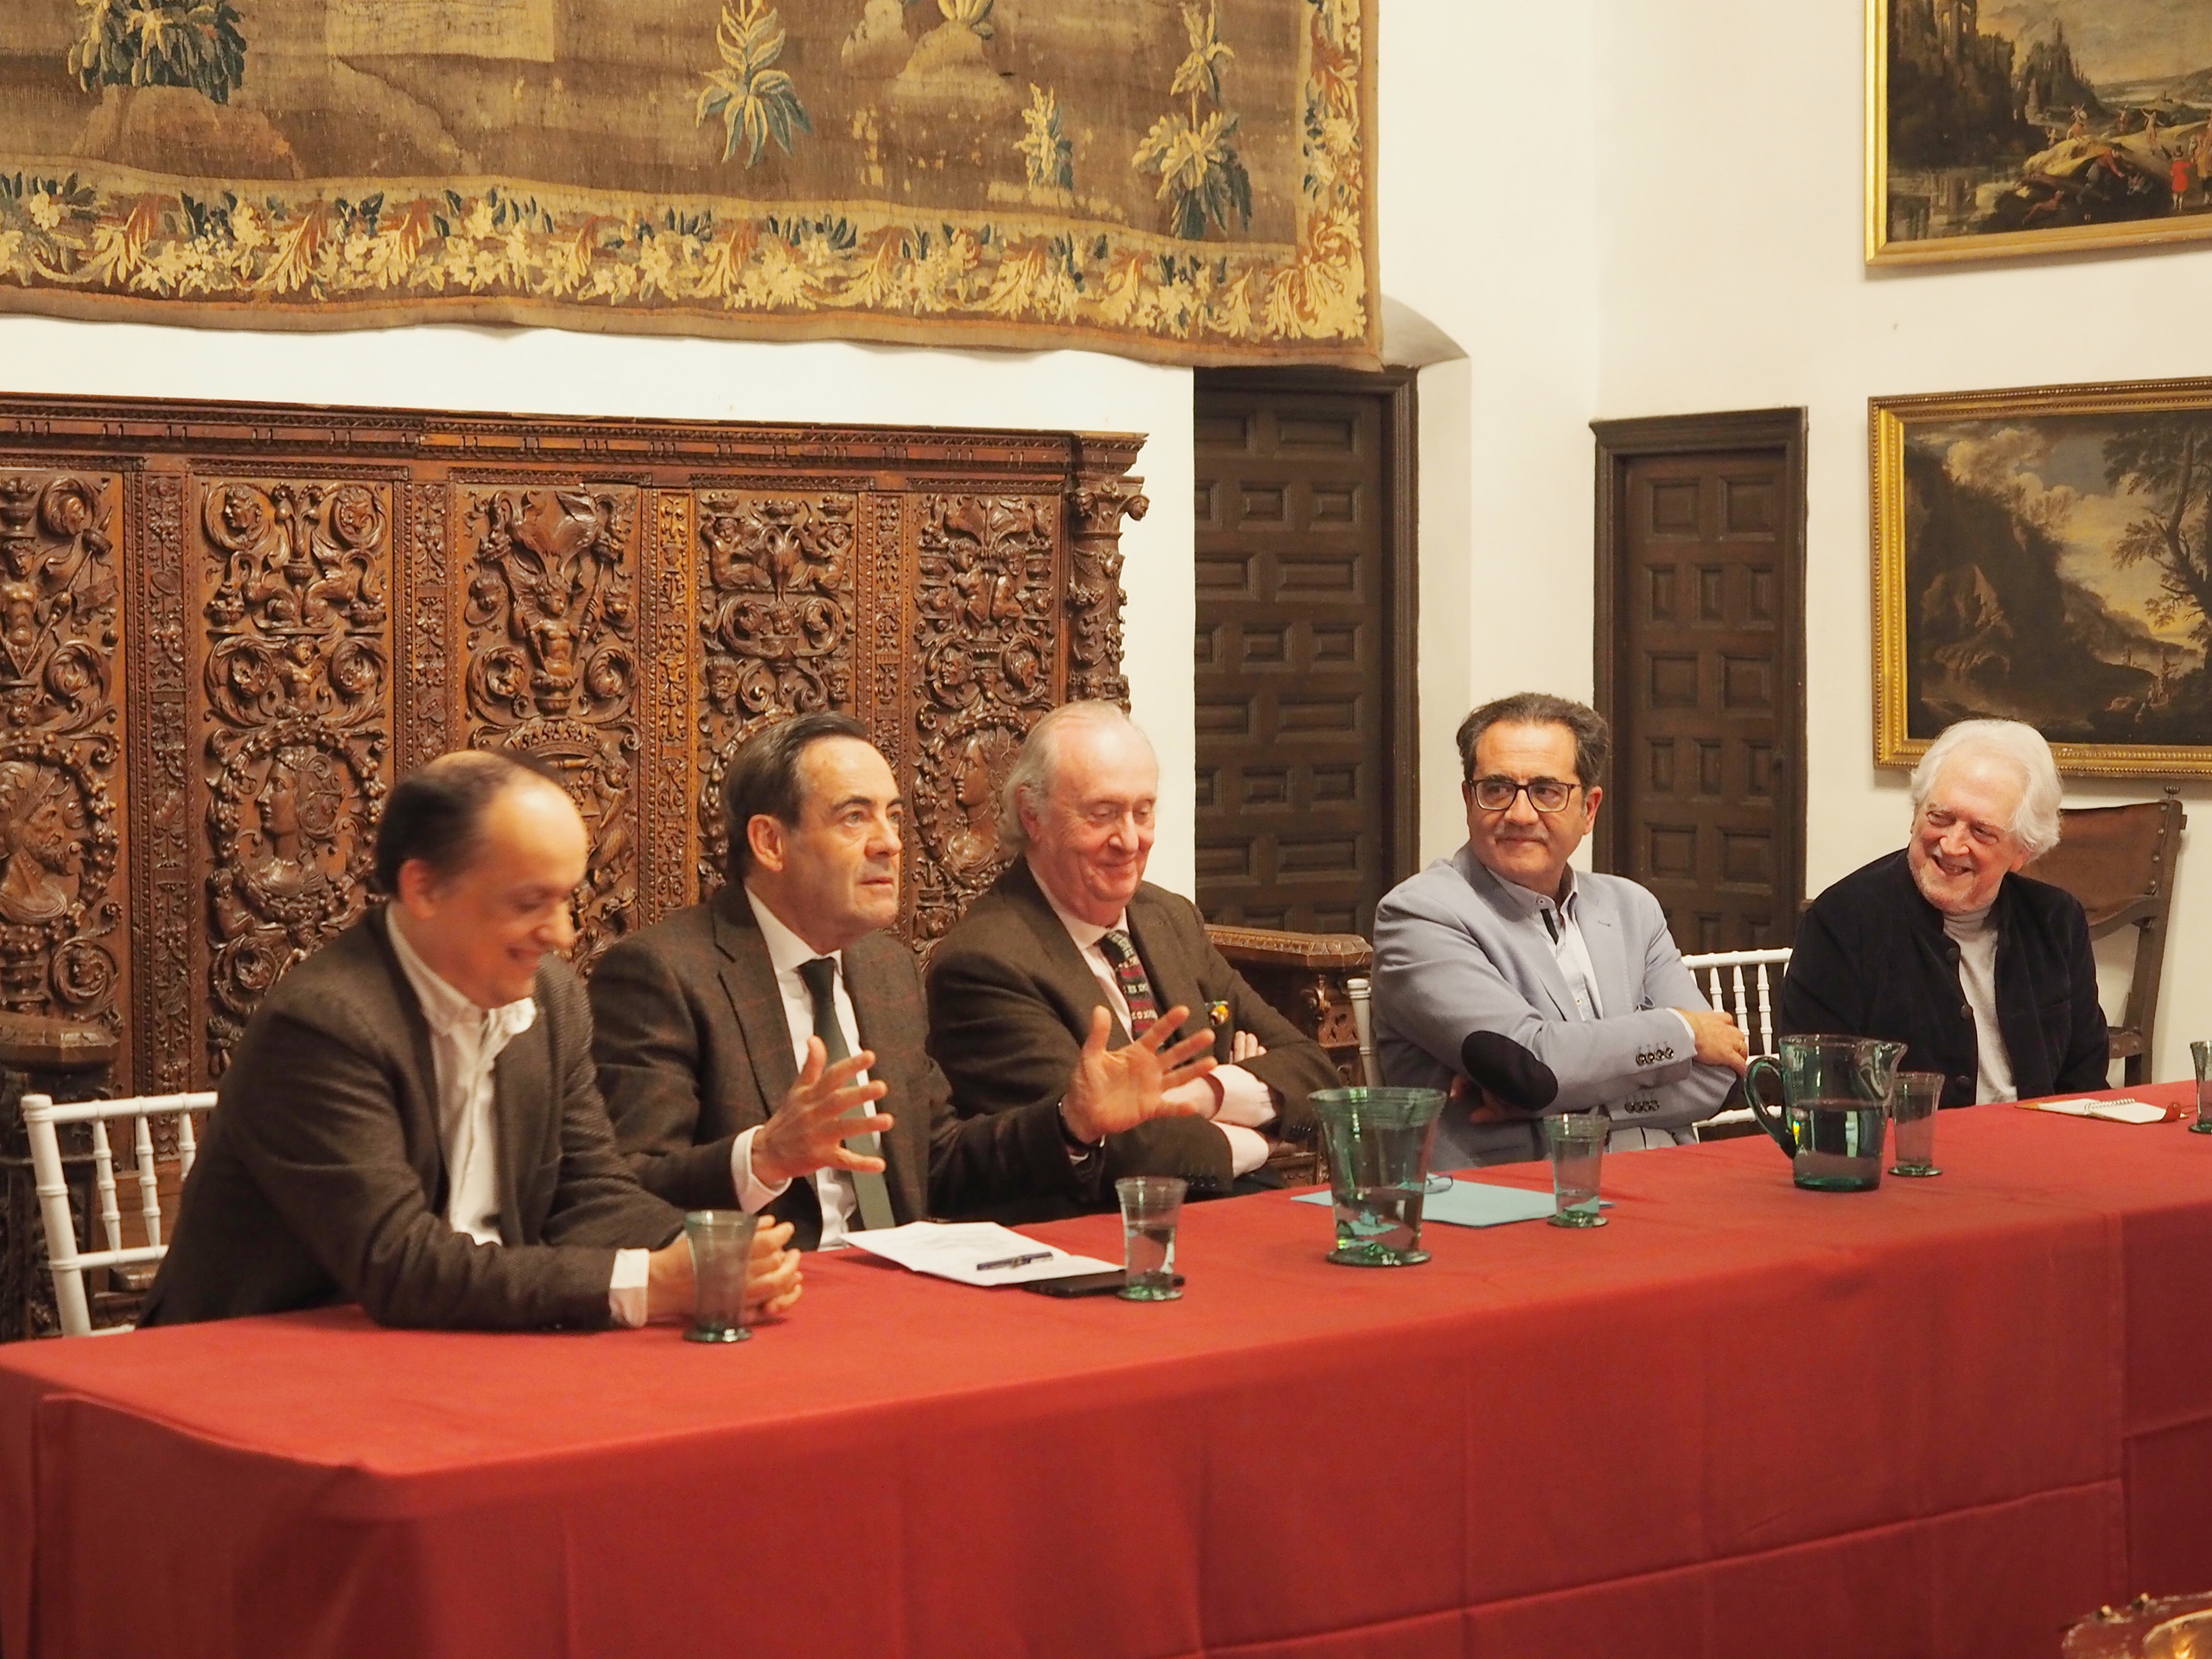 Presentation of the book by José Luis de Villar in the Hospital de Tavera